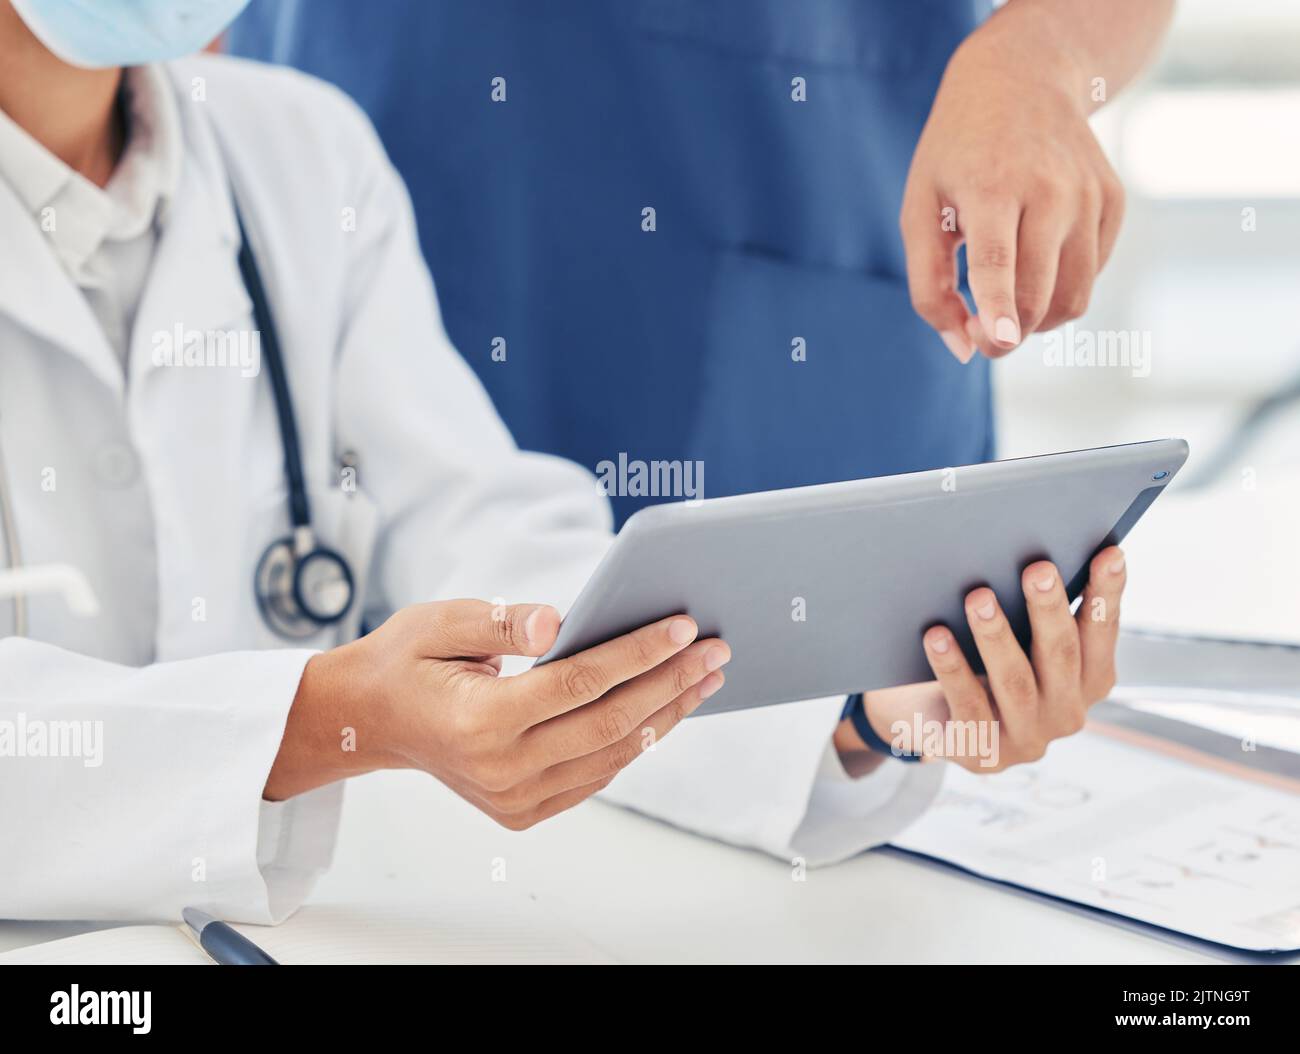 Krankenschwester und Arzt mit digitalem Tablet-Bericht, Laborergebnissen oder medizinischen Aufzeichnungen. Innovation, Forschung und Menschen arbeiten mit drahtloser Technologie Stockfoto